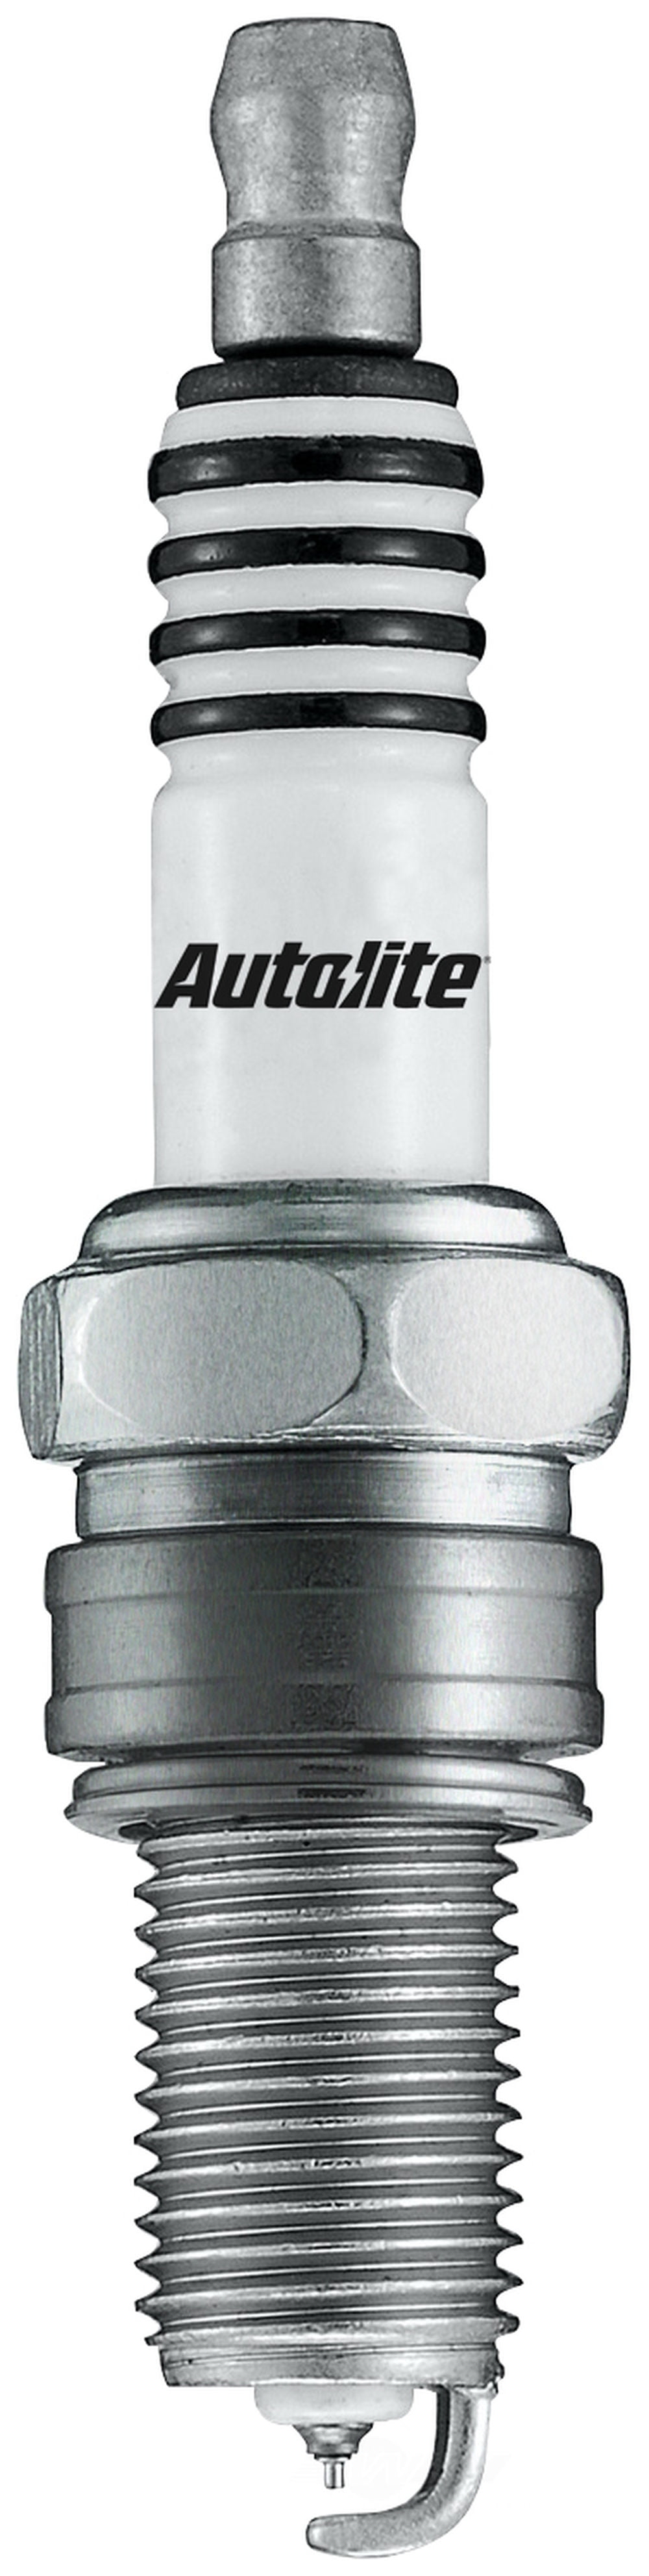 Autolite Extreme Start Iridium Enhanced Spark Plug # XST458 